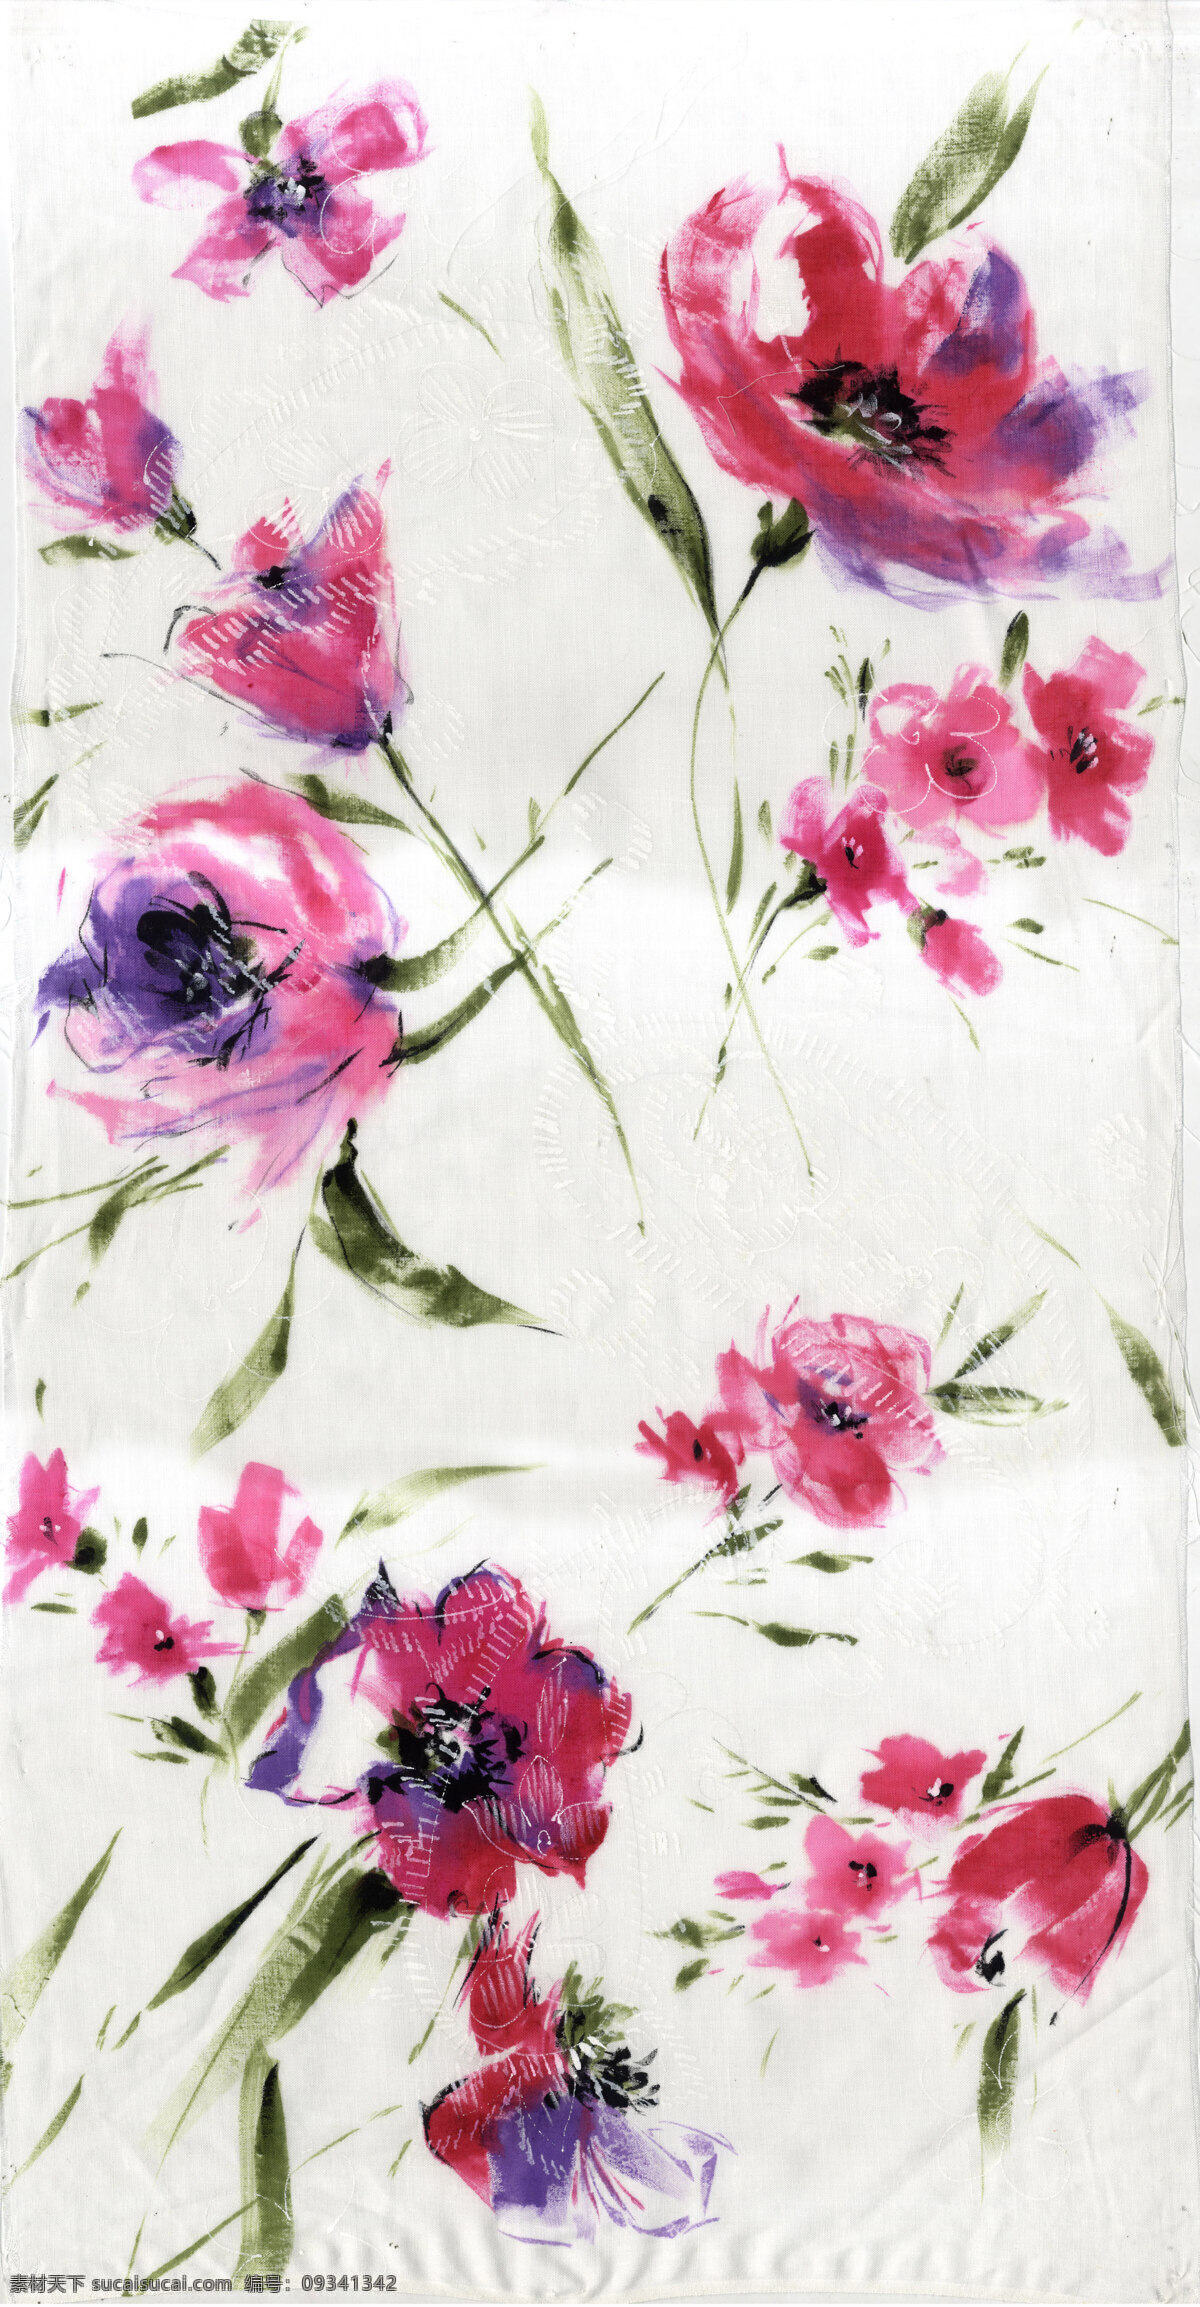 服装 花纹 布料 服装面料 图案 四方 连续 花卉图案 手绘水彩 花卉植物 纺织品 面料 花边花纹 底纹边框